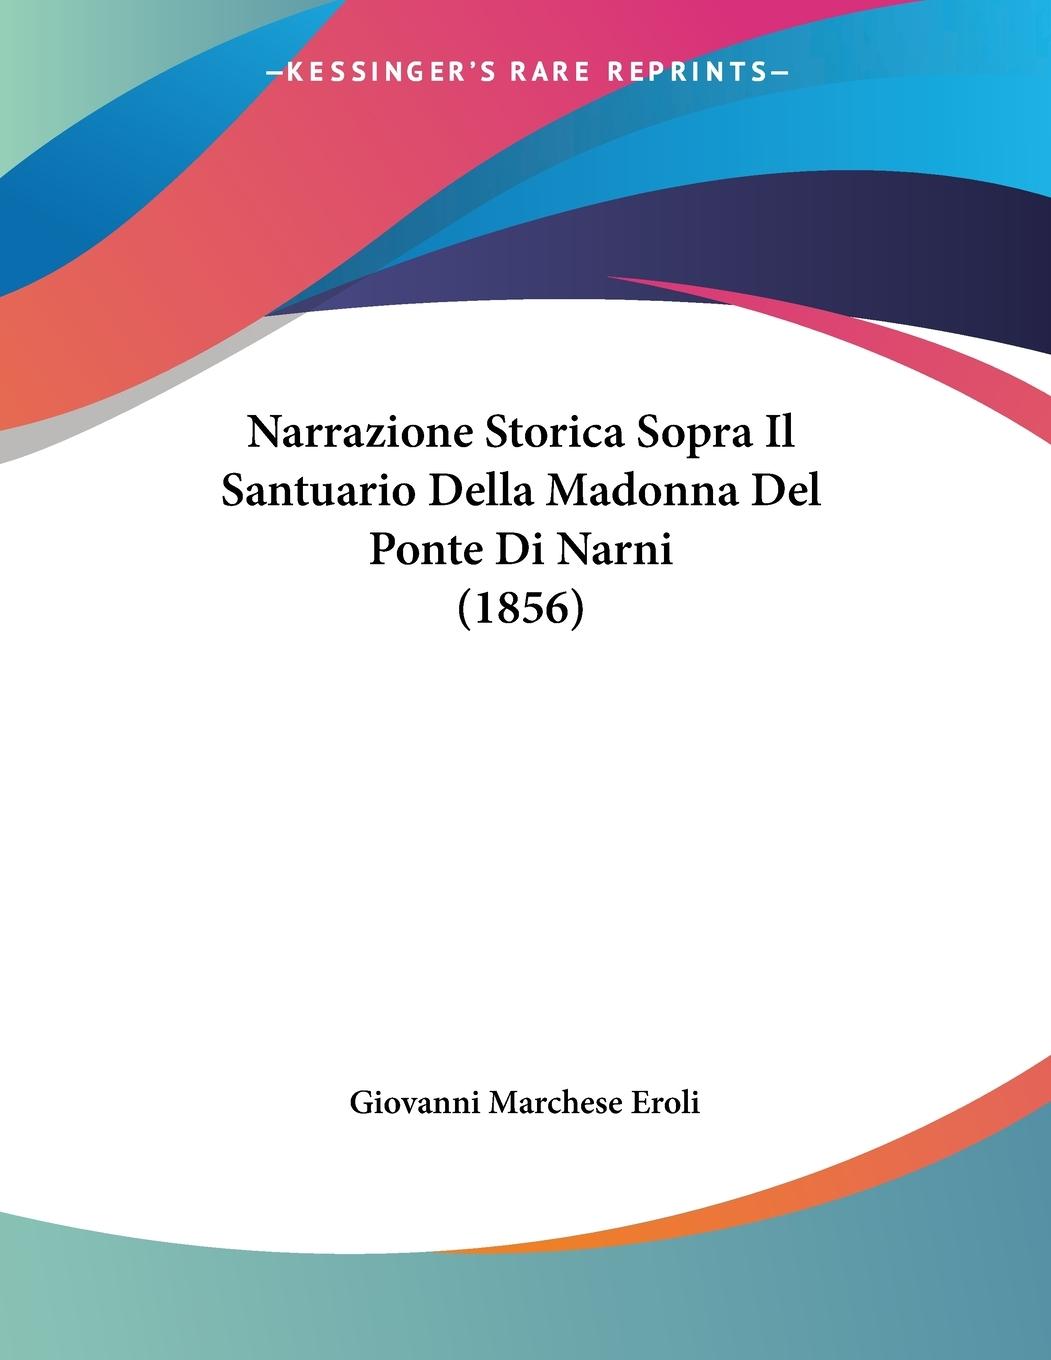 Narrazione Storica Sopra Il Santuario Della Madonna Del Ponte Di Narni (1856) - Eroli, Giovanni Marchese